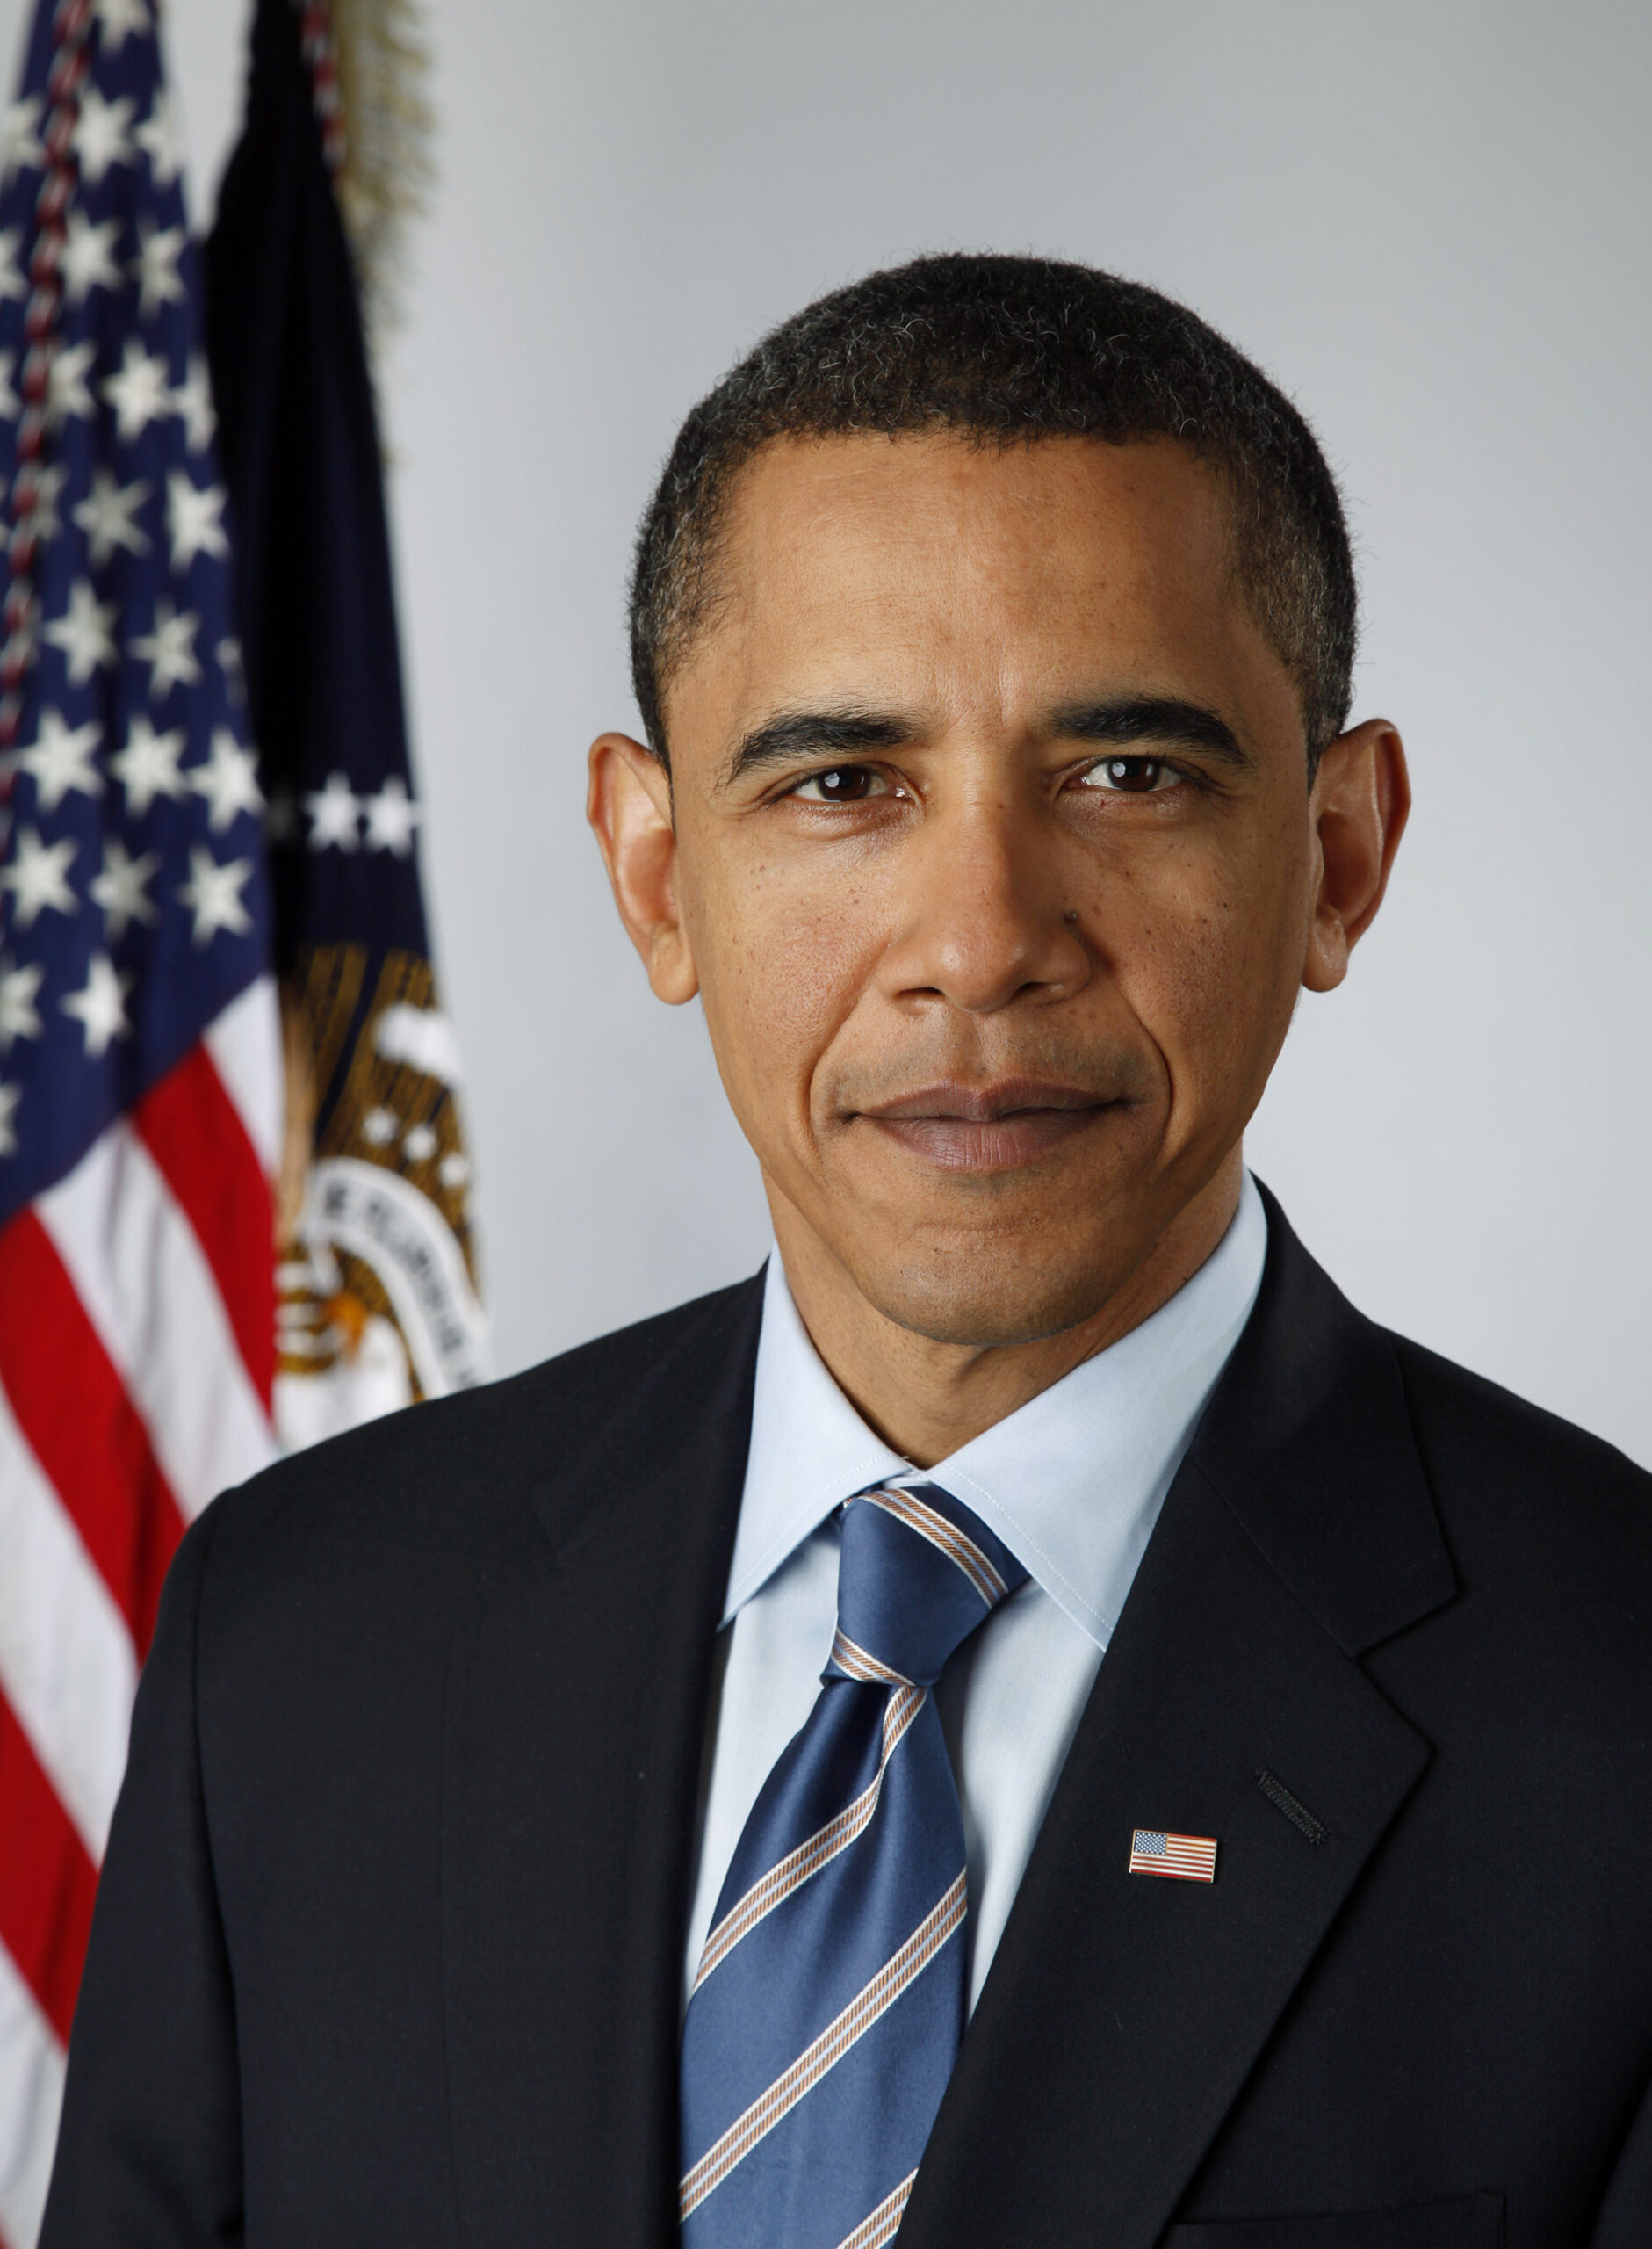 Official-portrait-of-Barack-Obama